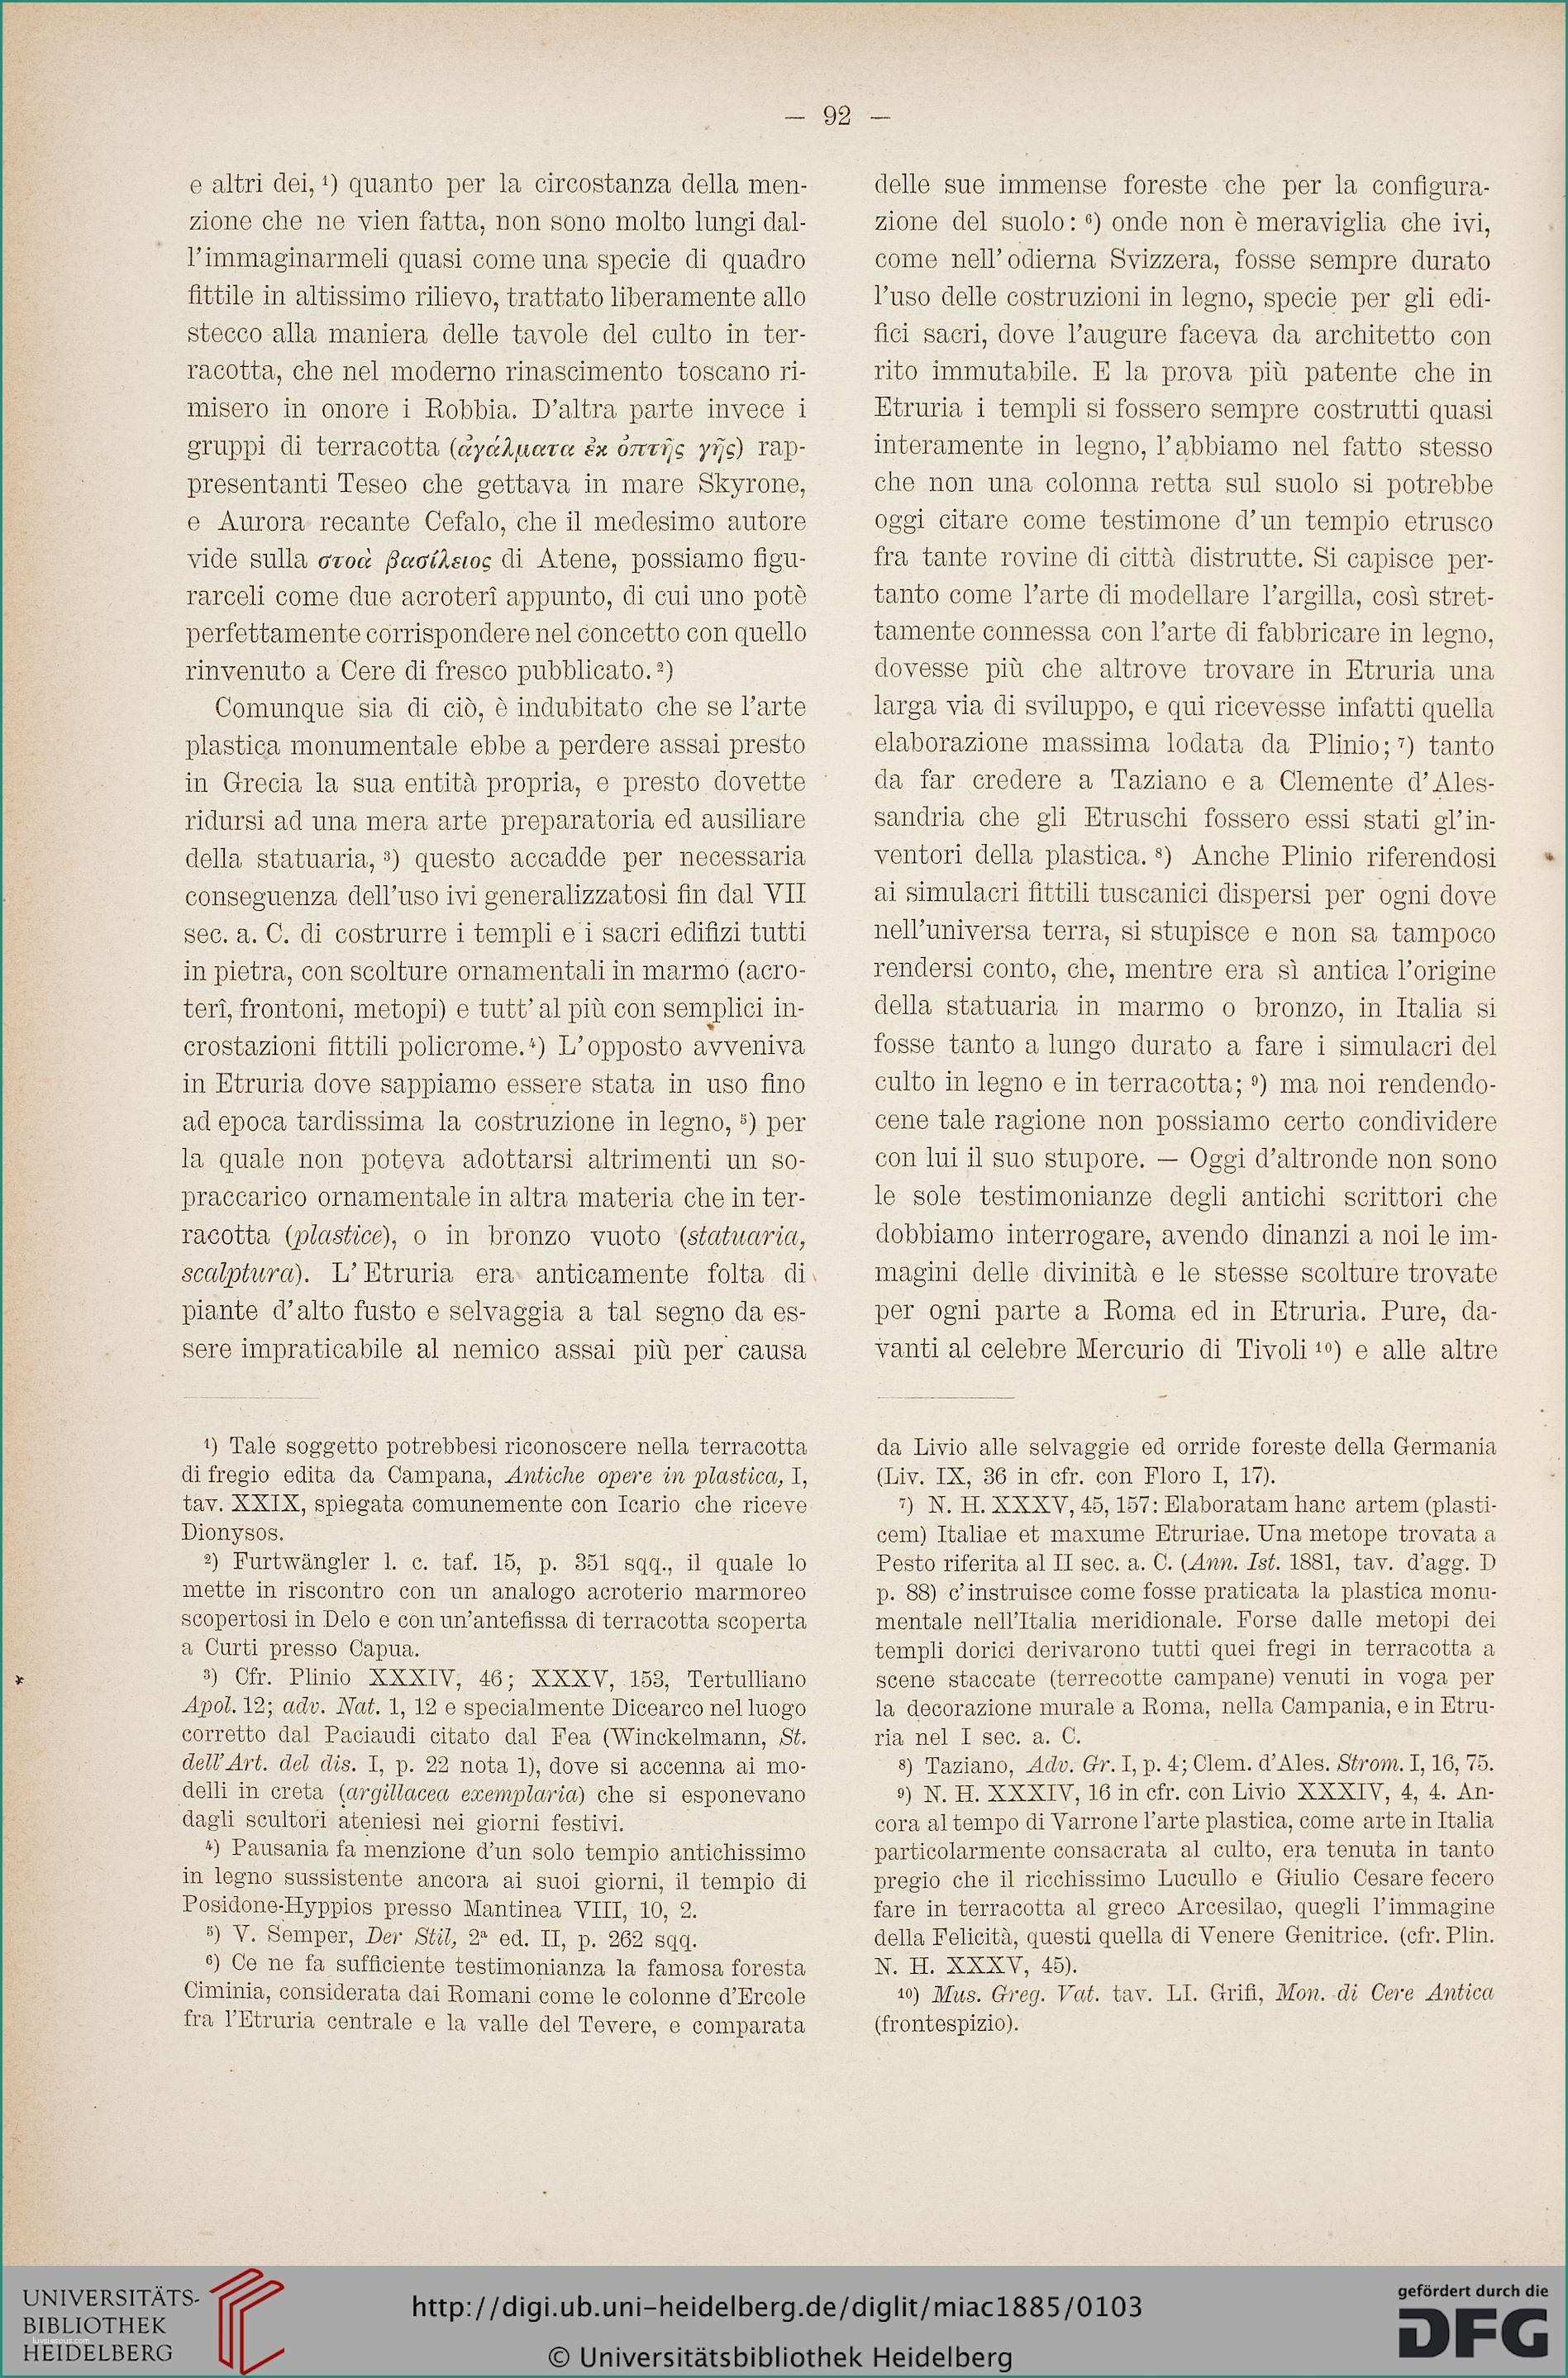 Case Mobili Senza Concessione Edilizia E Museo Italiano Di Antichit  Classica 1 1884 85